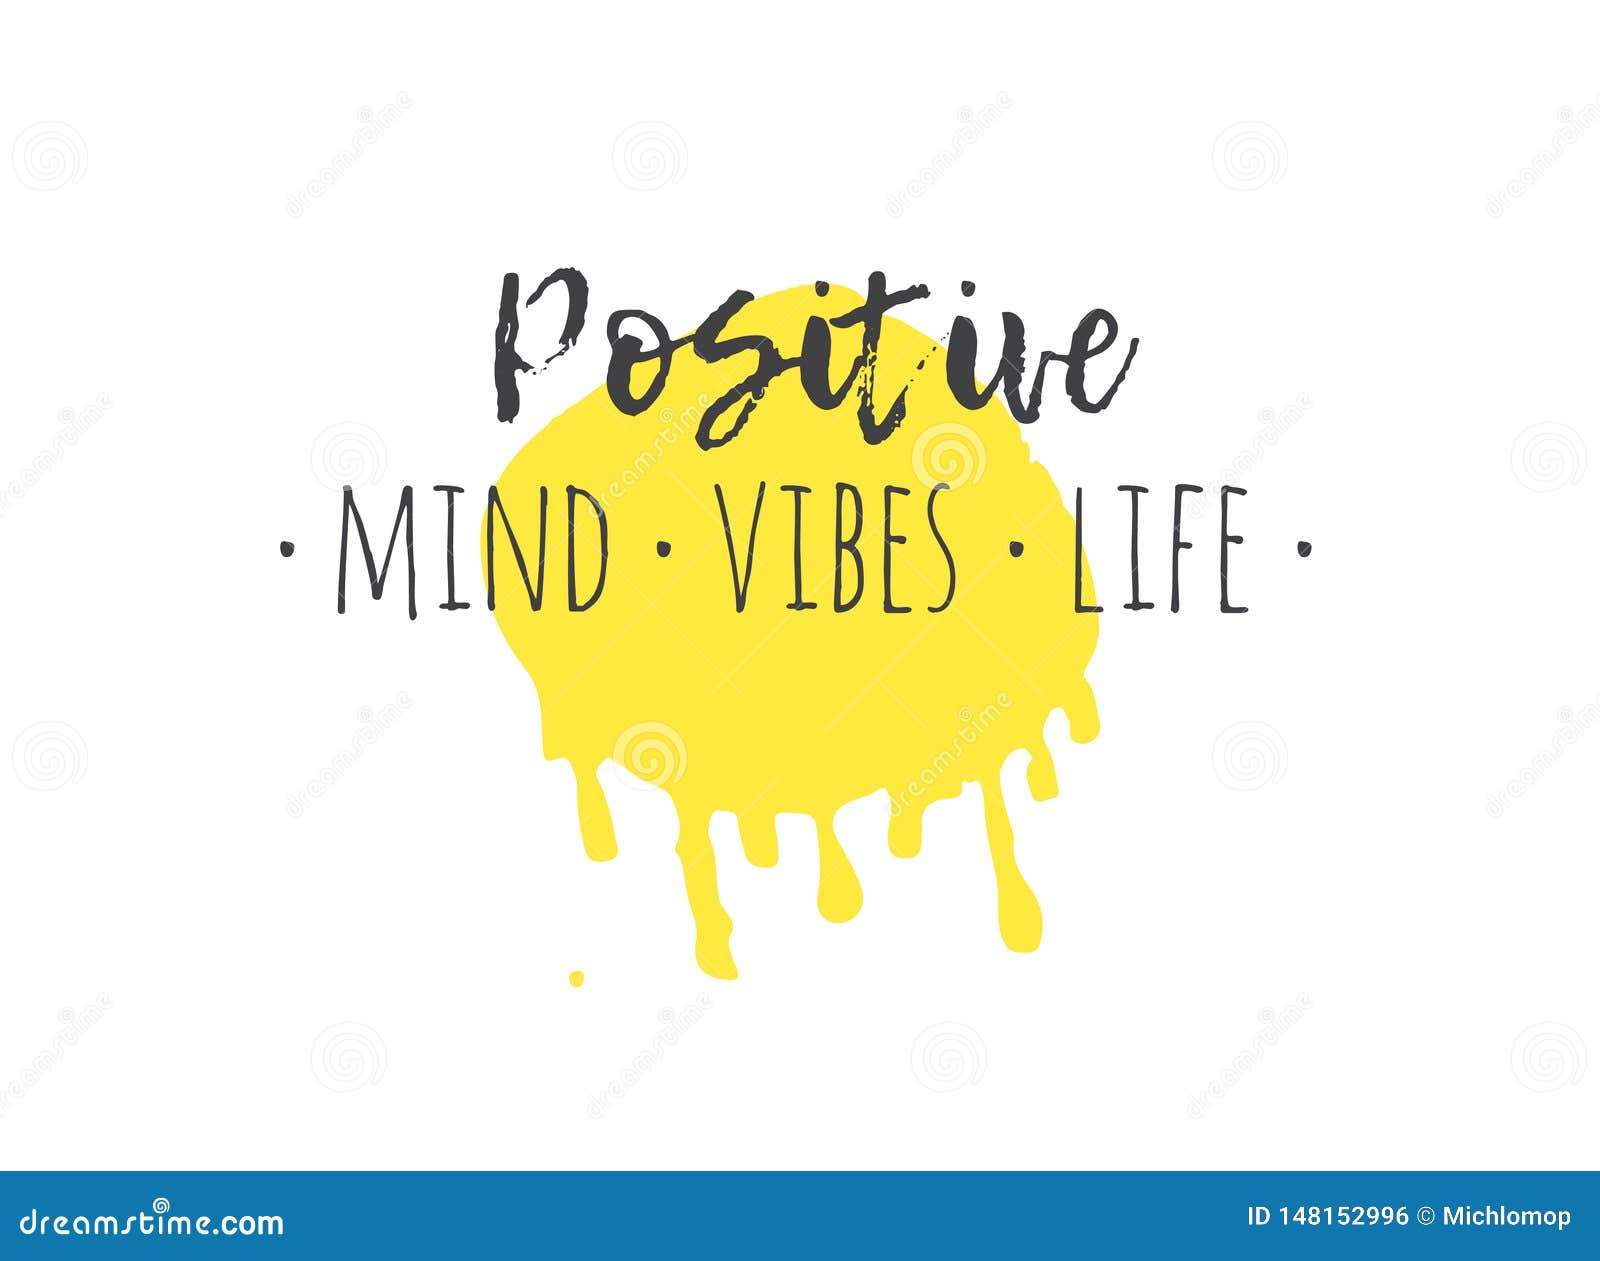 Vibe life. Здоровья и хорошего настроения картинки позитивные. Слова позитивные на желтом фоне.